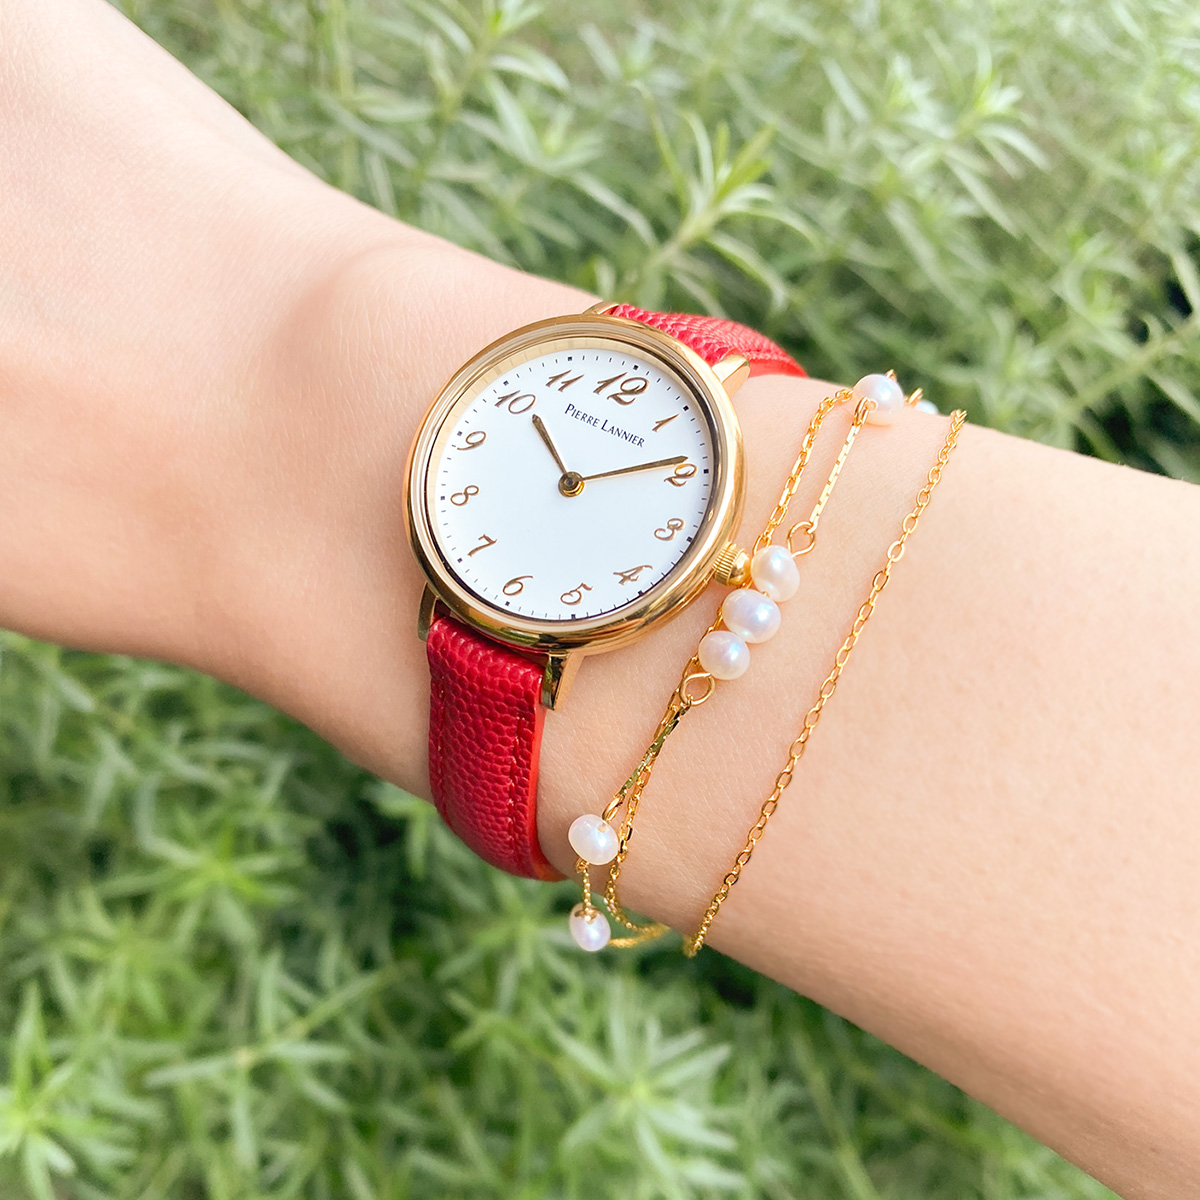 22年 オリジナル腕時計レディース特集 名入れ カスタムok可愛い人気店 サプライズプレゼント Com